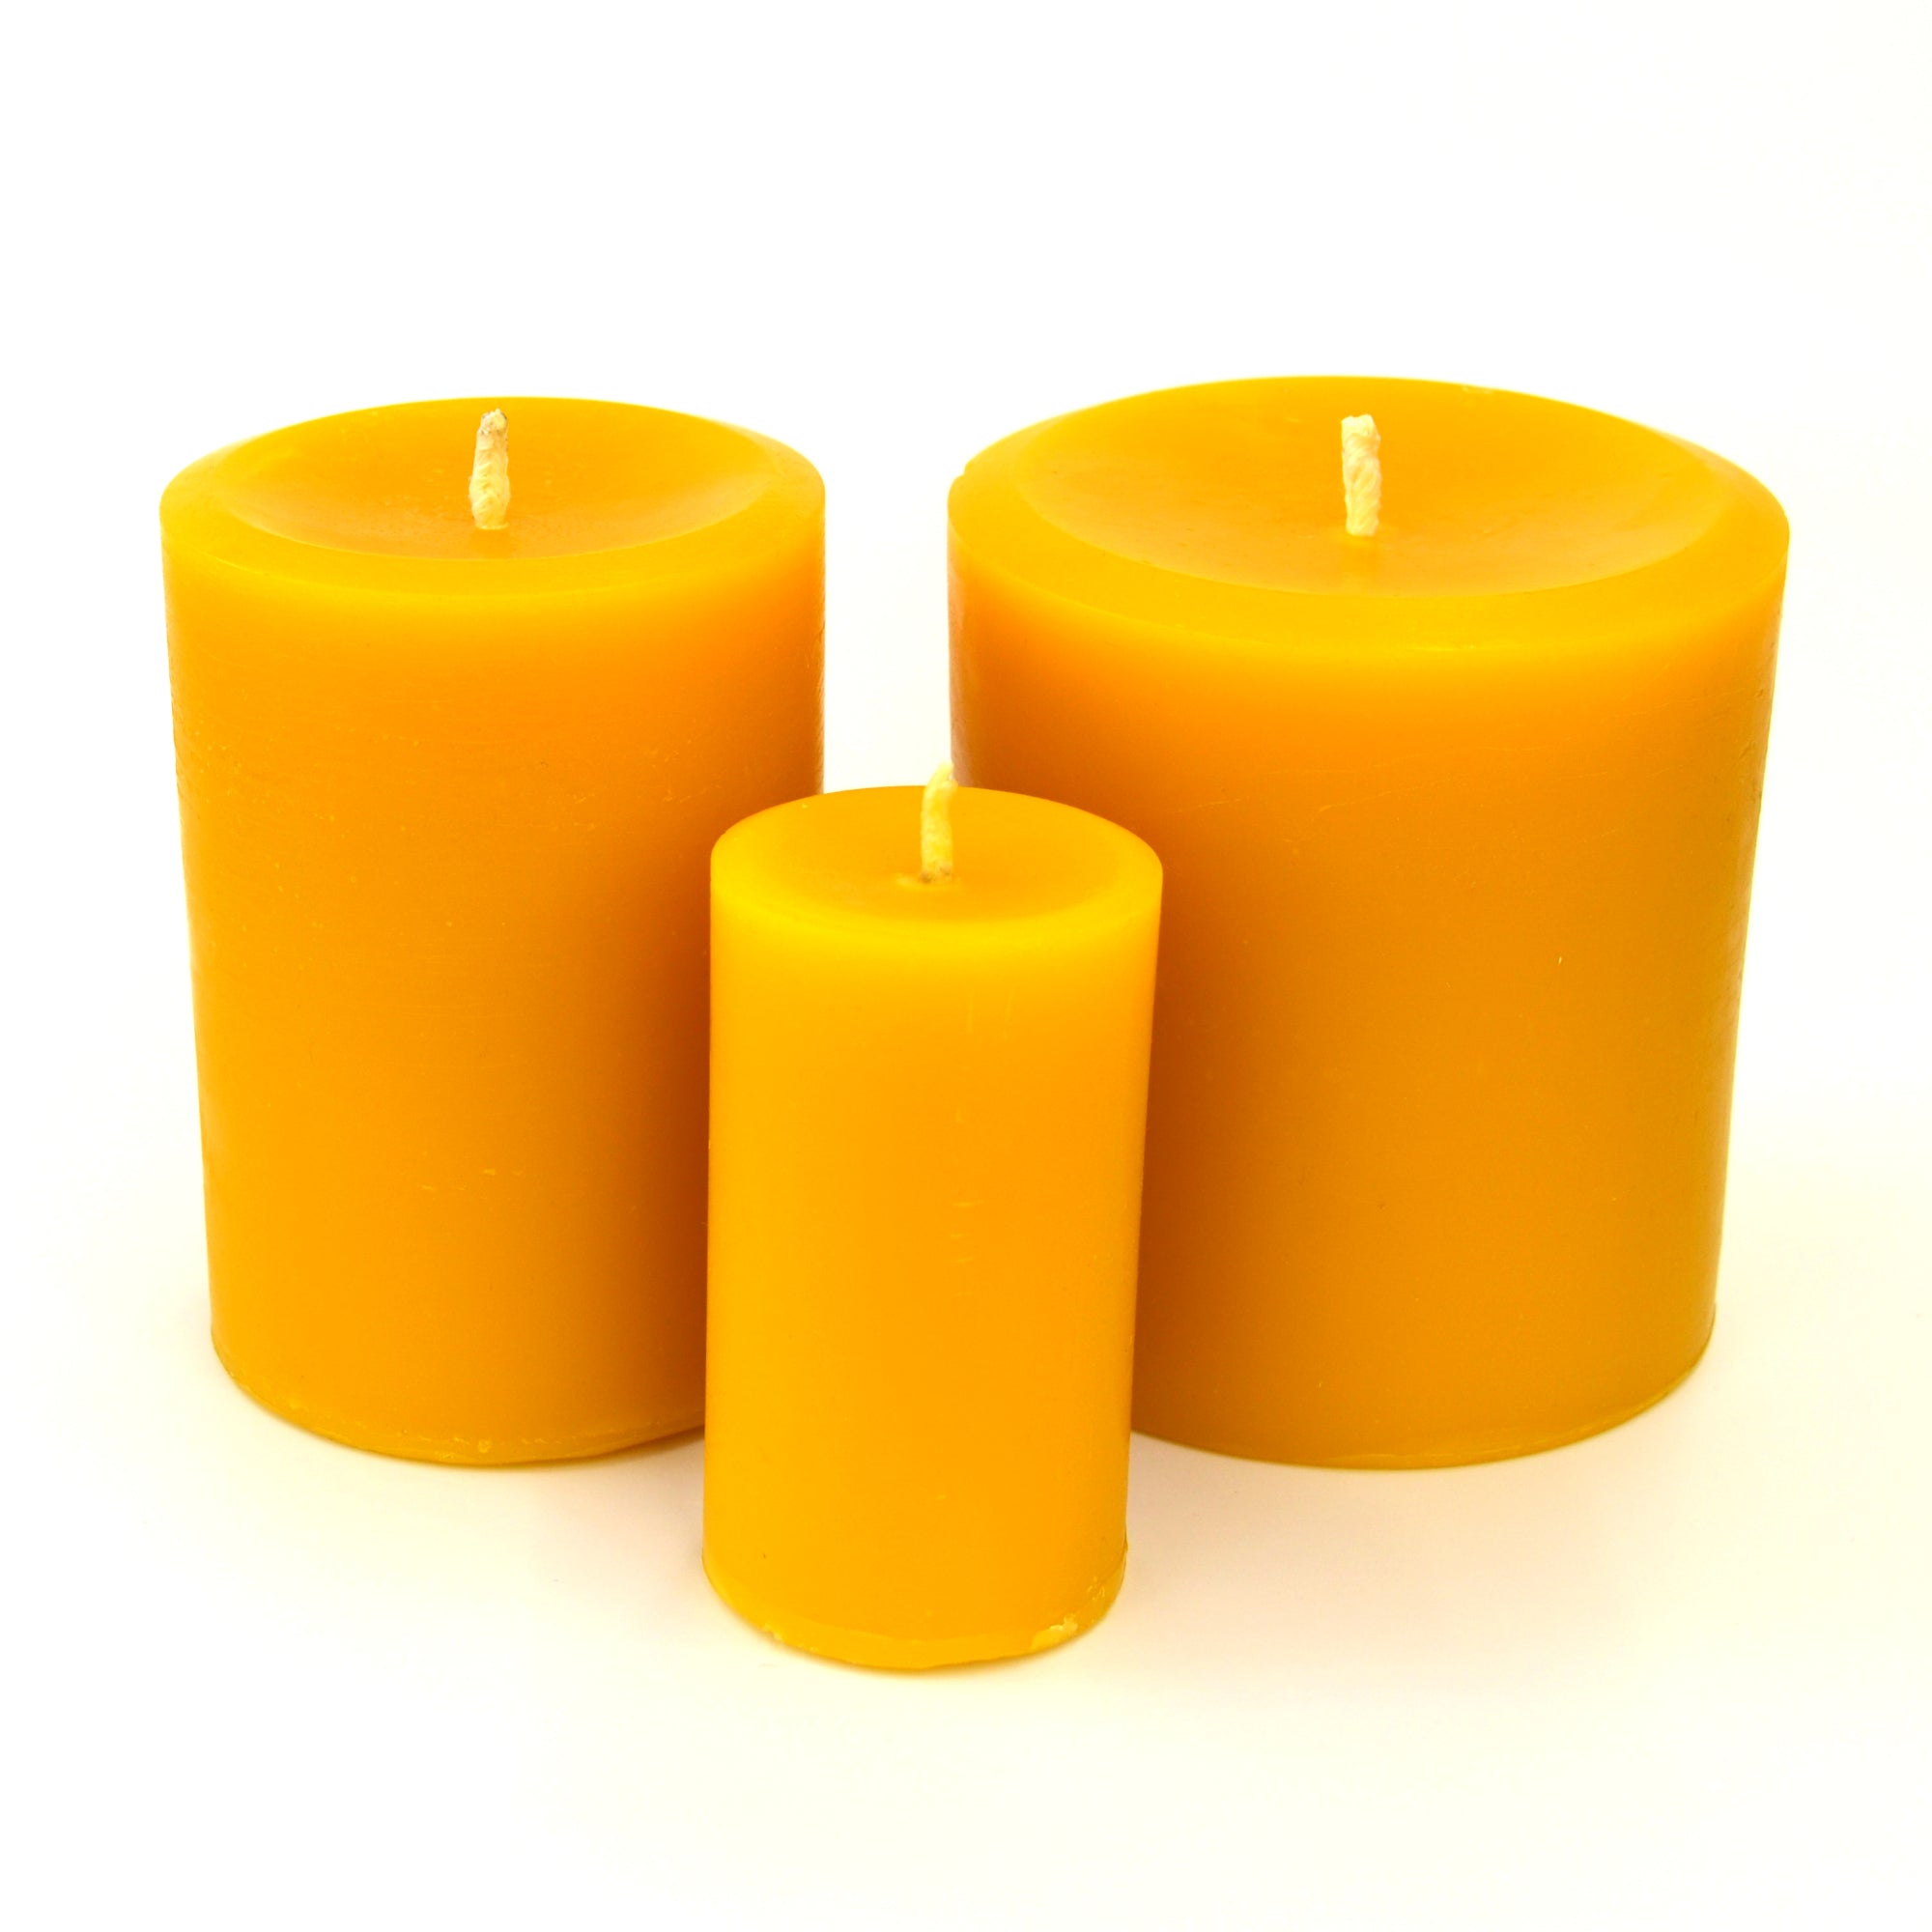 How to Use Pillar Candles, Pillar Candles DIY, Pillar Candle Tips